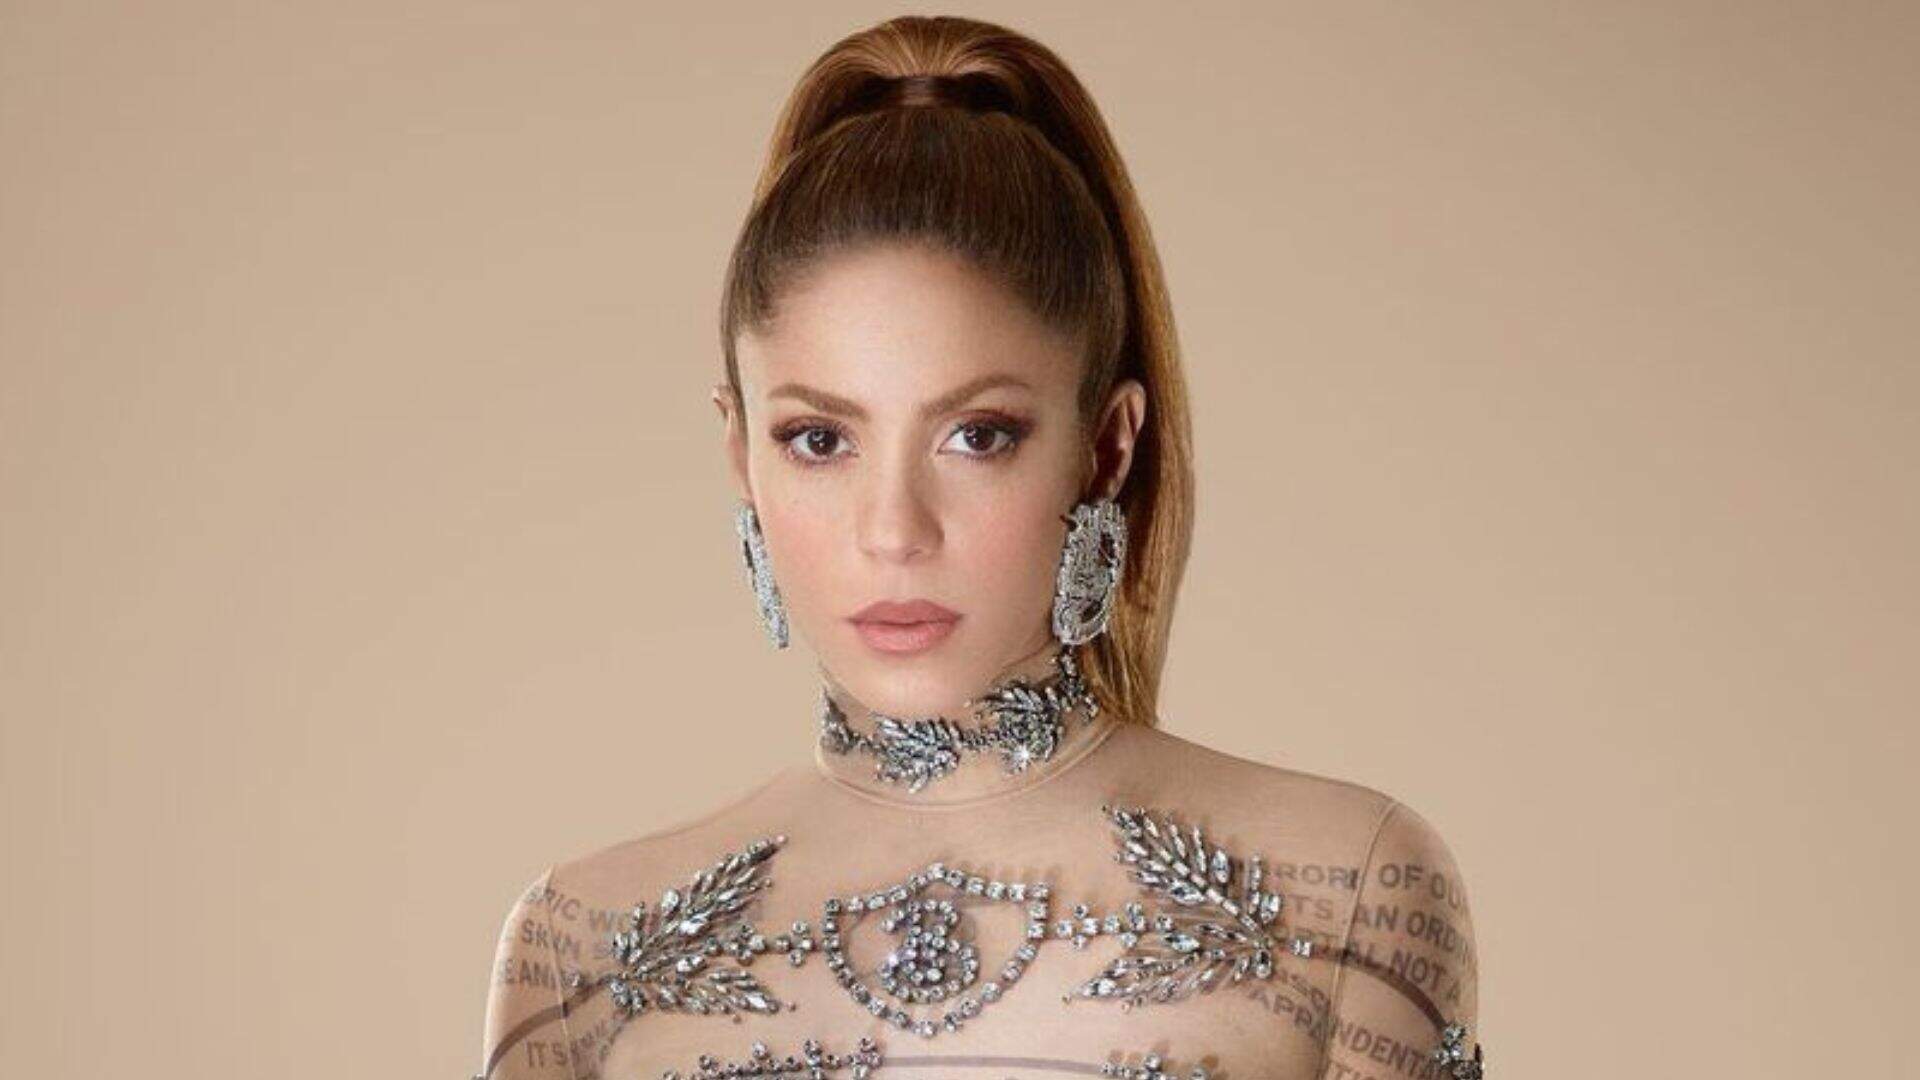 Shakira faz desabafo de ano novo no Twitter: “Nossas lágrimas não são em vão” - Metropolitana FM